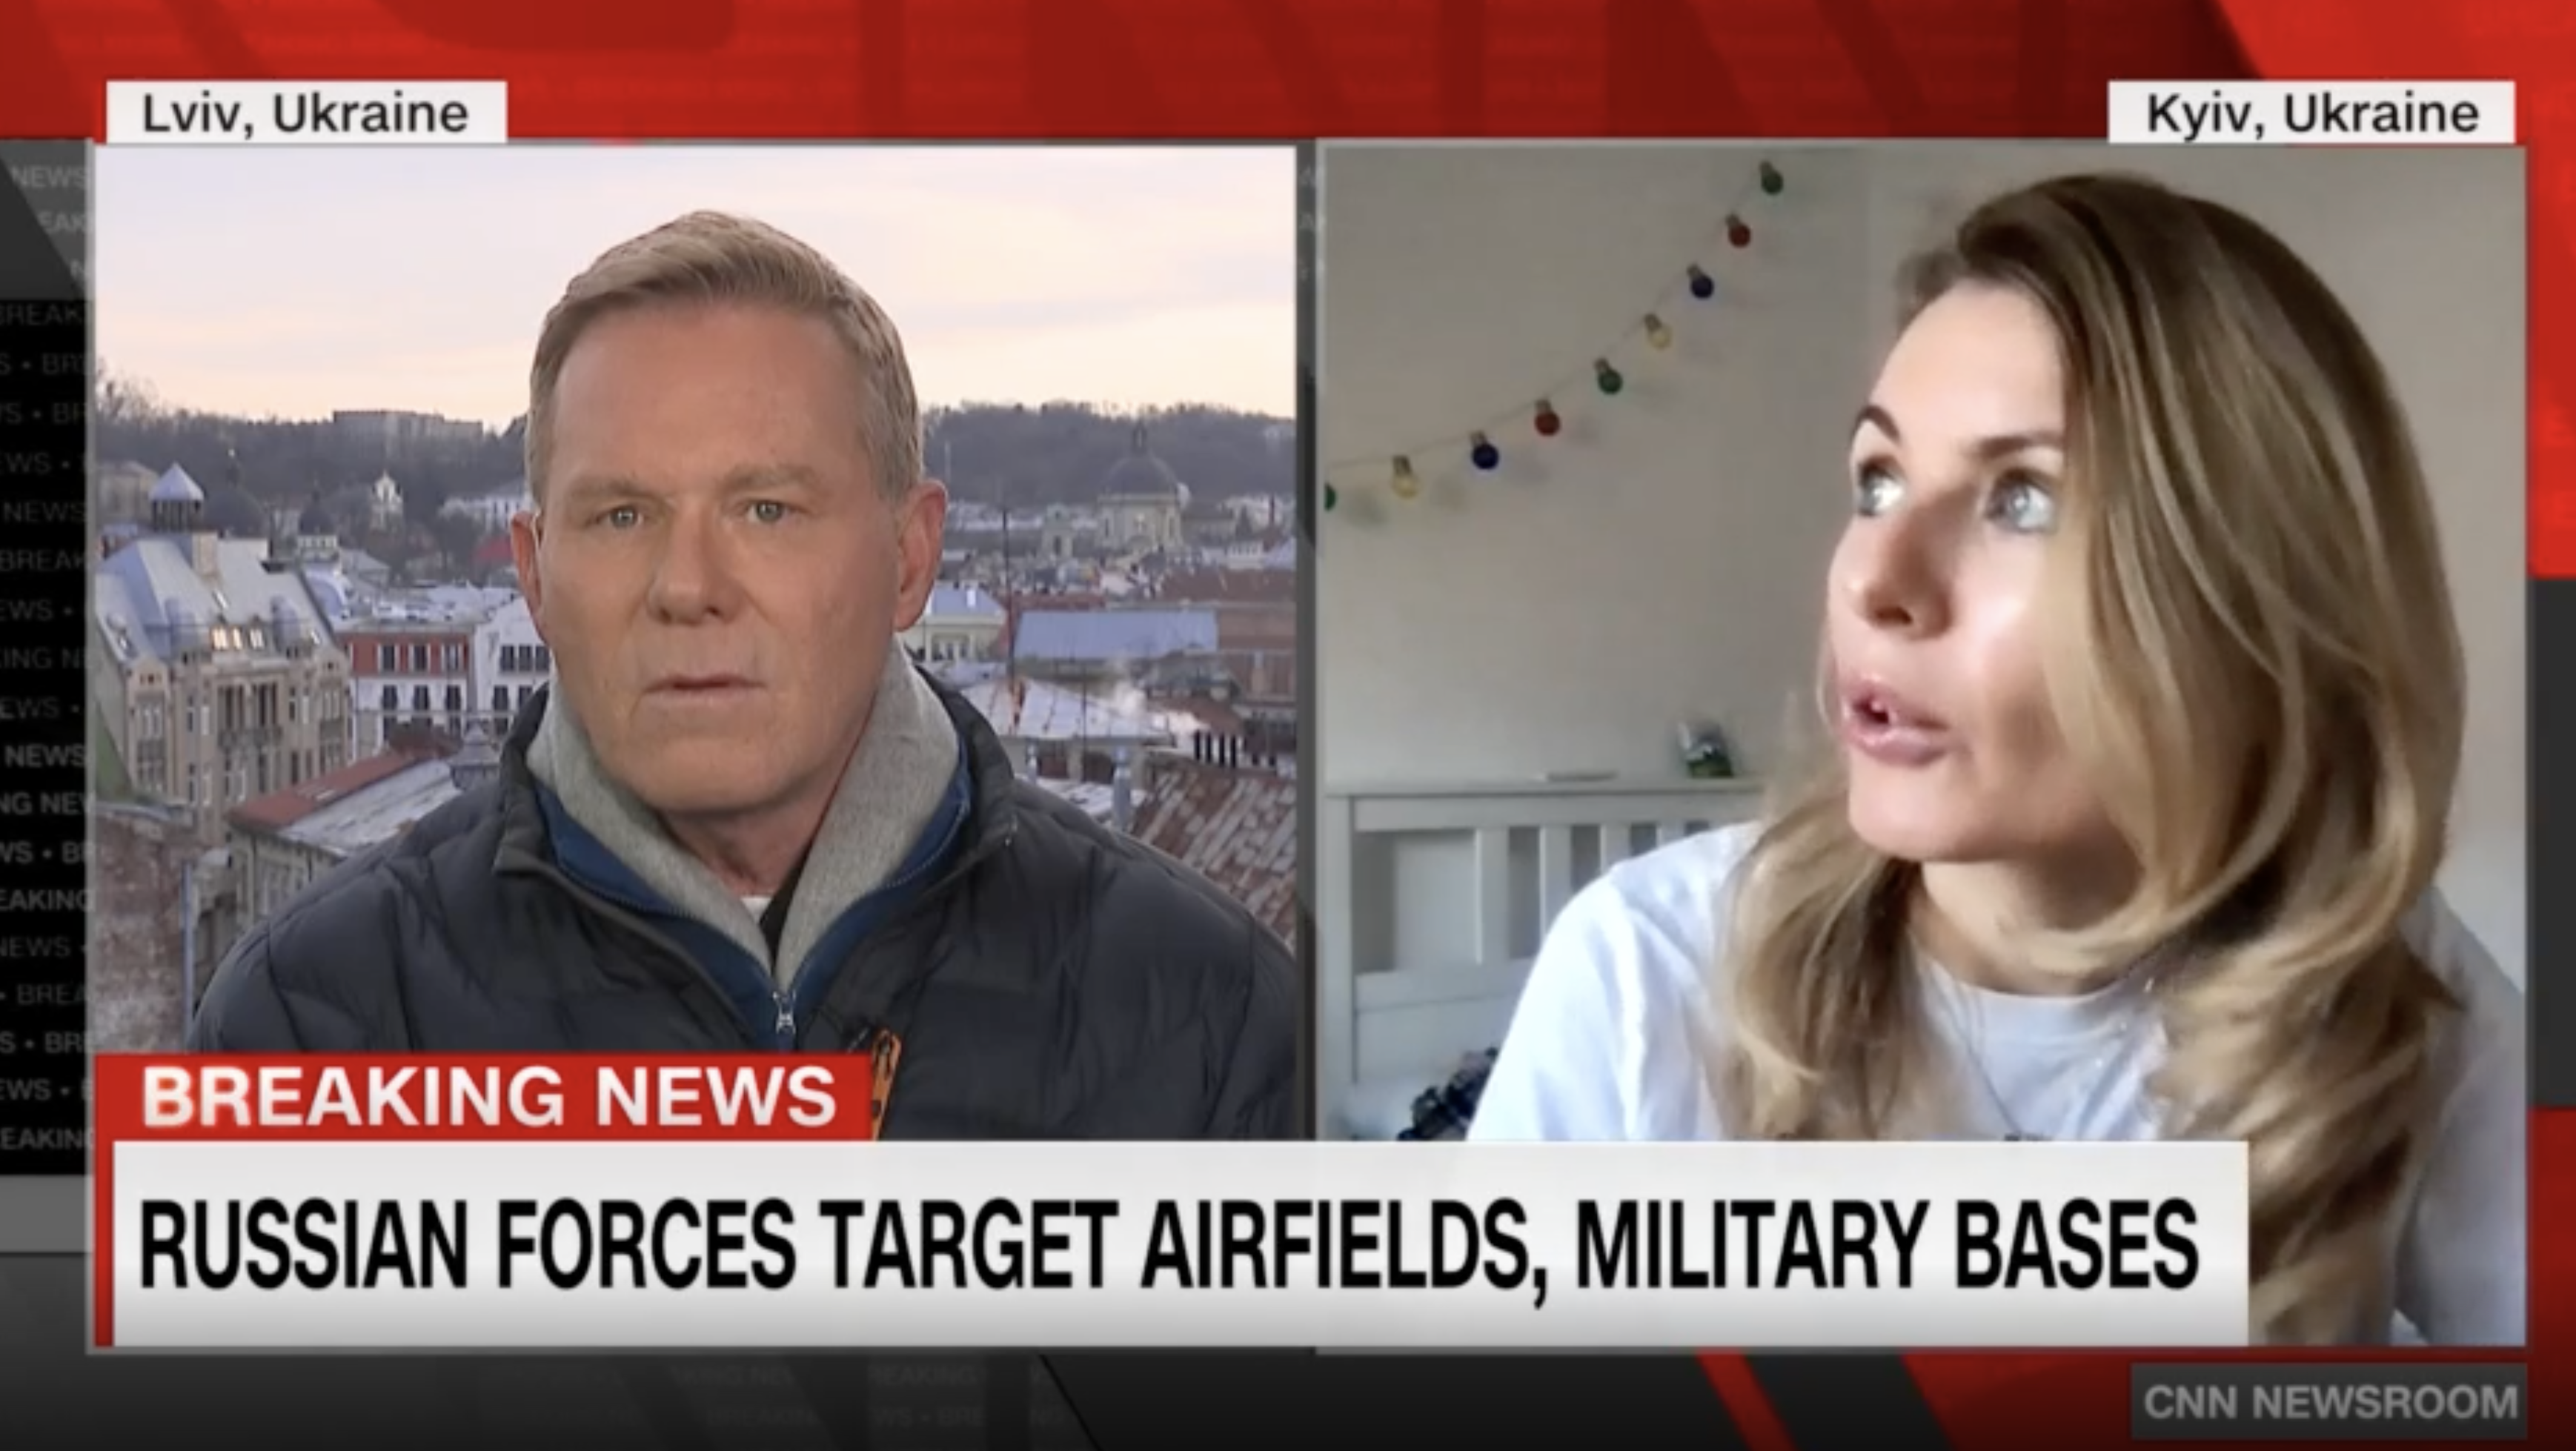 Ukrainian lawmaker Lesia Vasylenko speaks to CNN from Ukraine on February 25 as aircraft fly overhead.